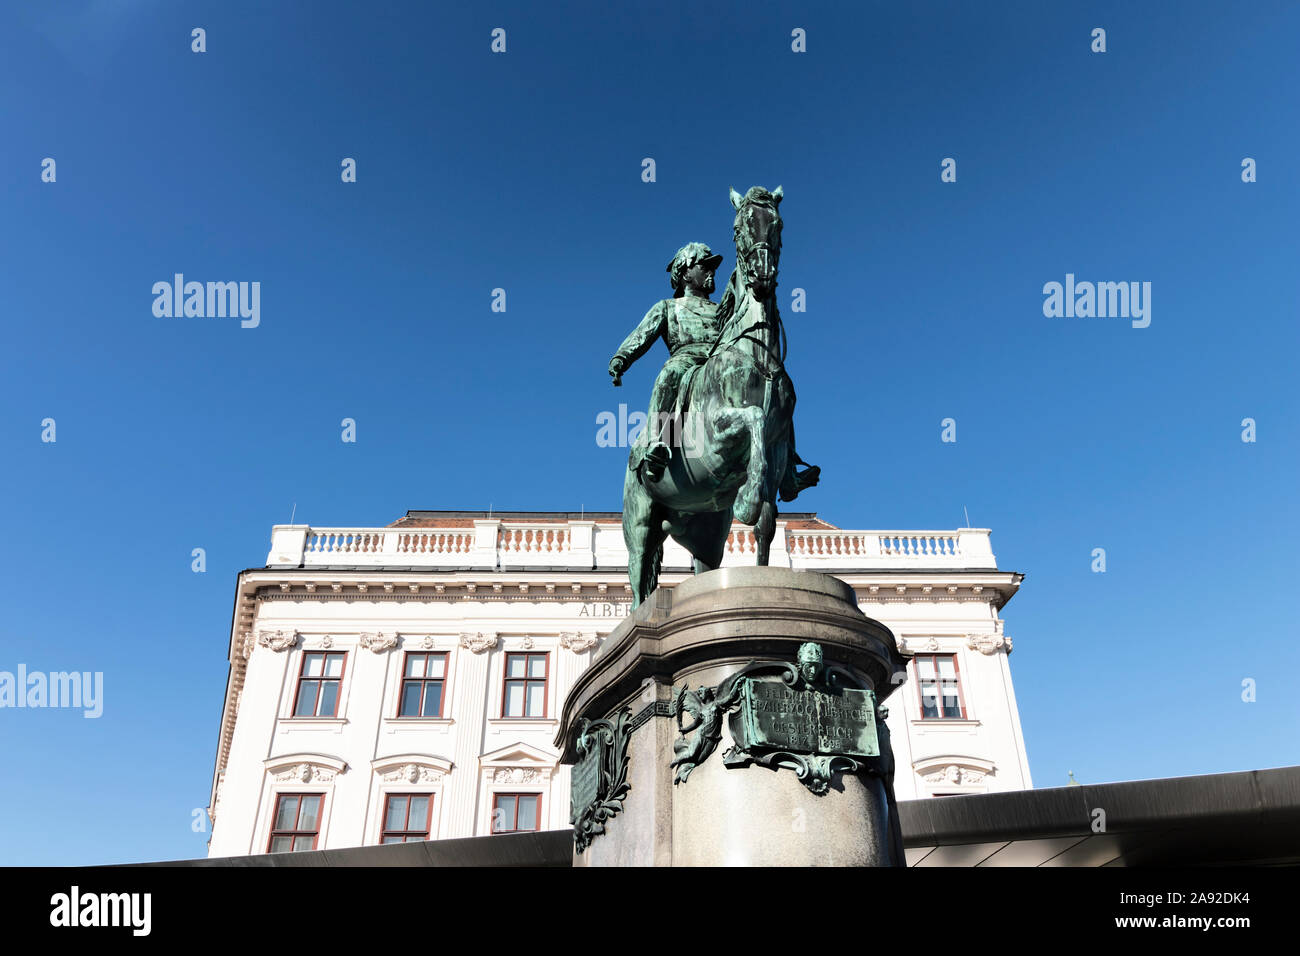 Statue of Archduke Albrecht in Vienna Stock Photo